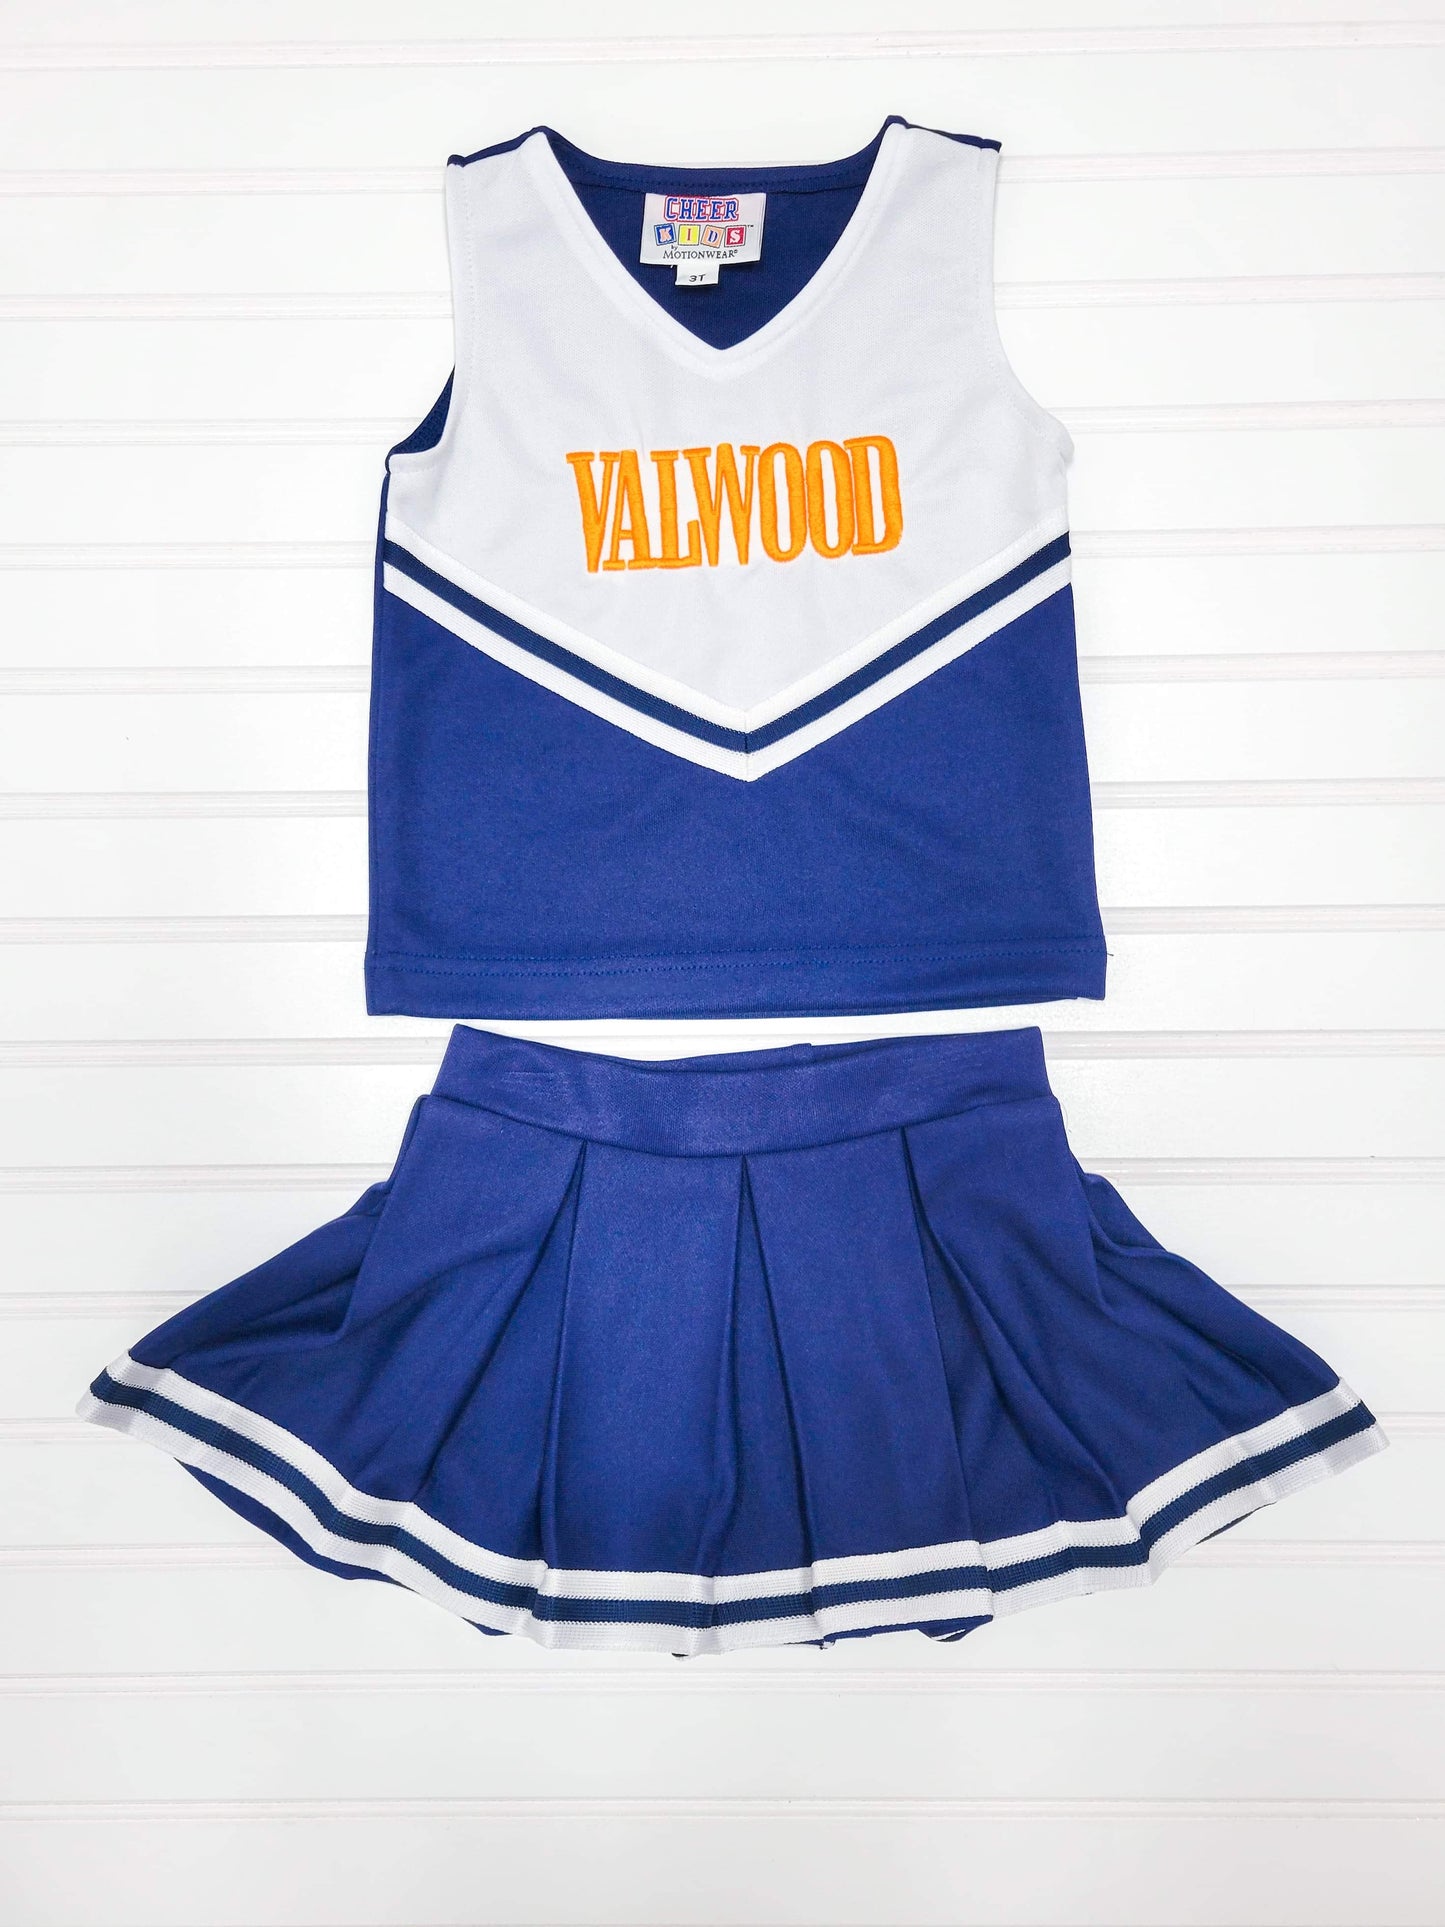 Cheer Set - Valwood w/Pleated Skirt